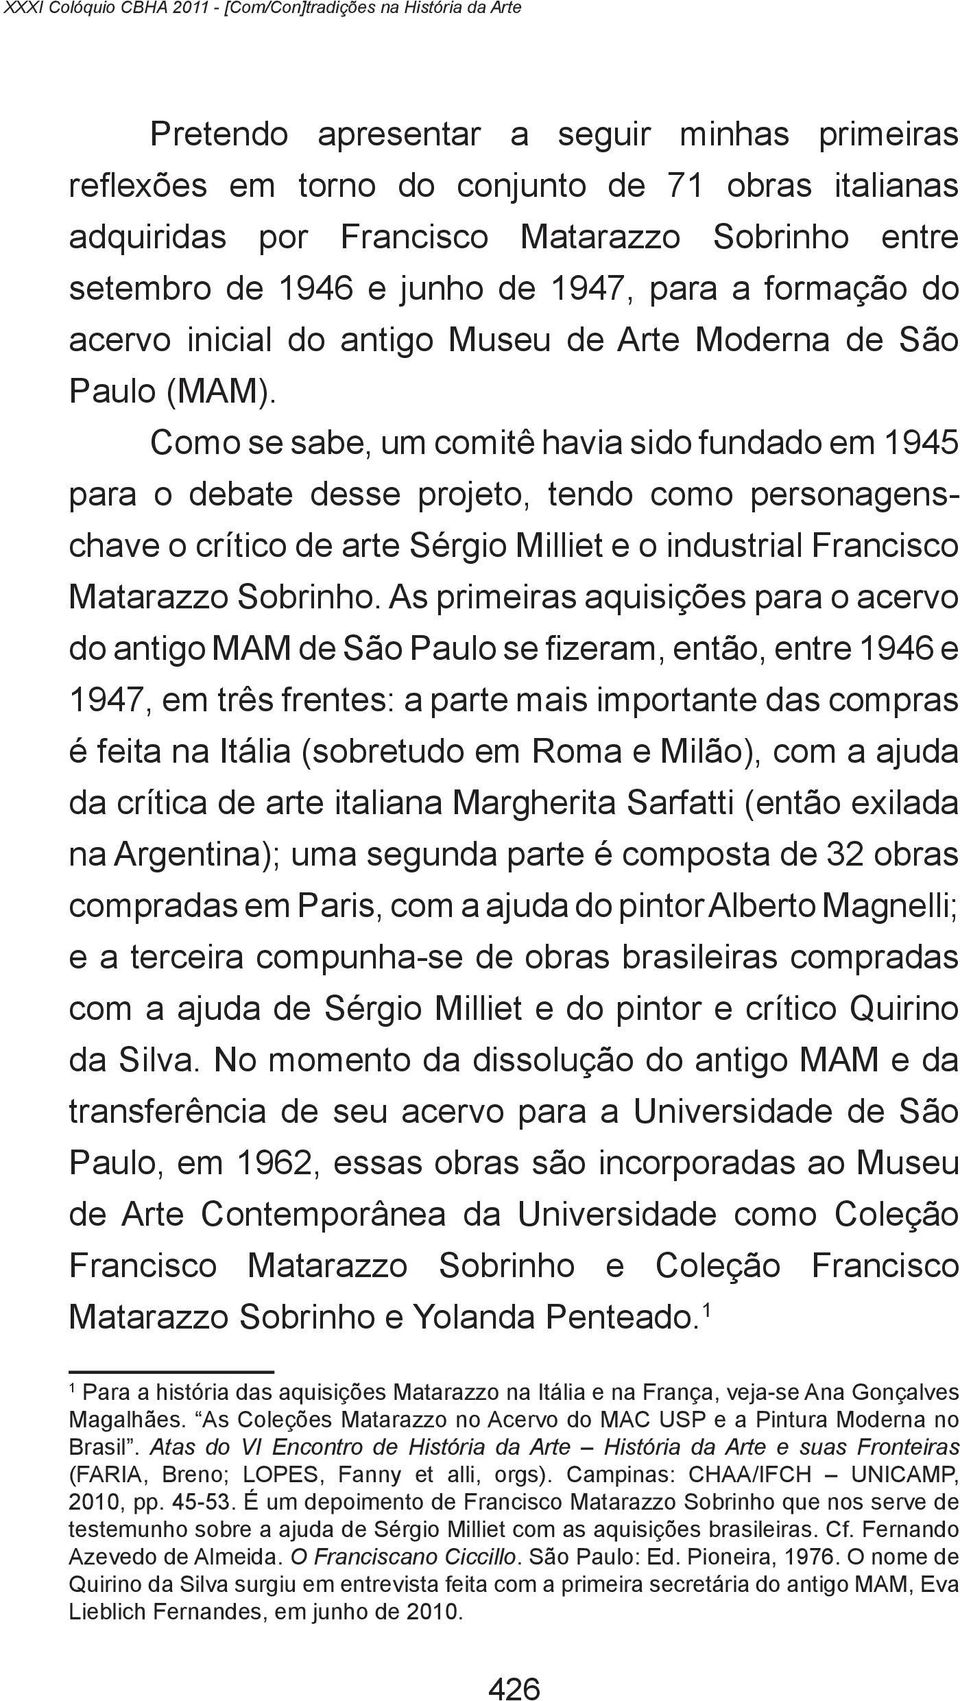 Como se sabe, um comitê havia sido fundado em 1945 para o debate desse projeto, tendo como personagenschave o crítico de arte Sérgio Milliet e o industrial Francisco Matarazzo Sobrinho.